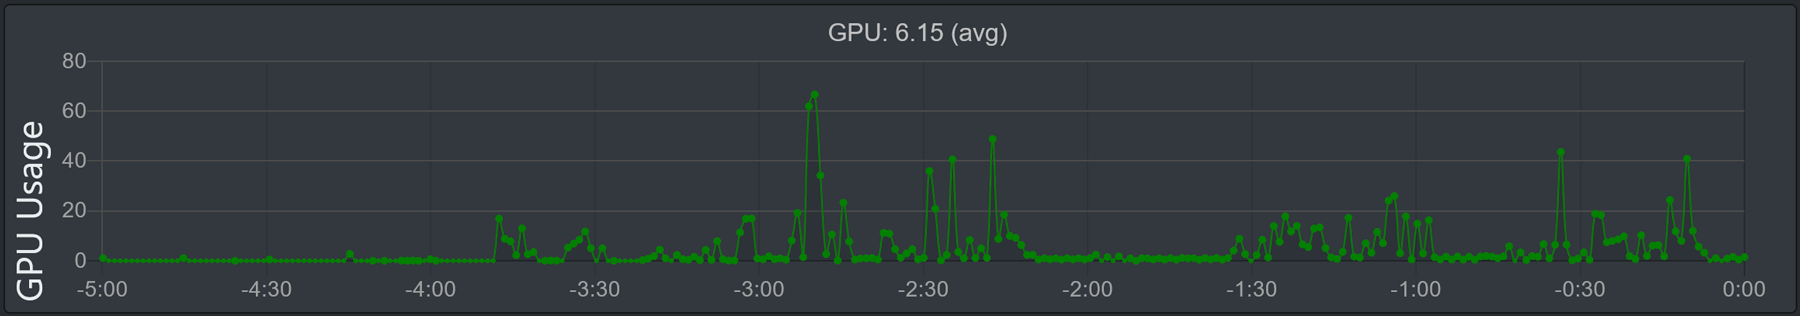 Imagen del gráfico 'Uso de GPU'